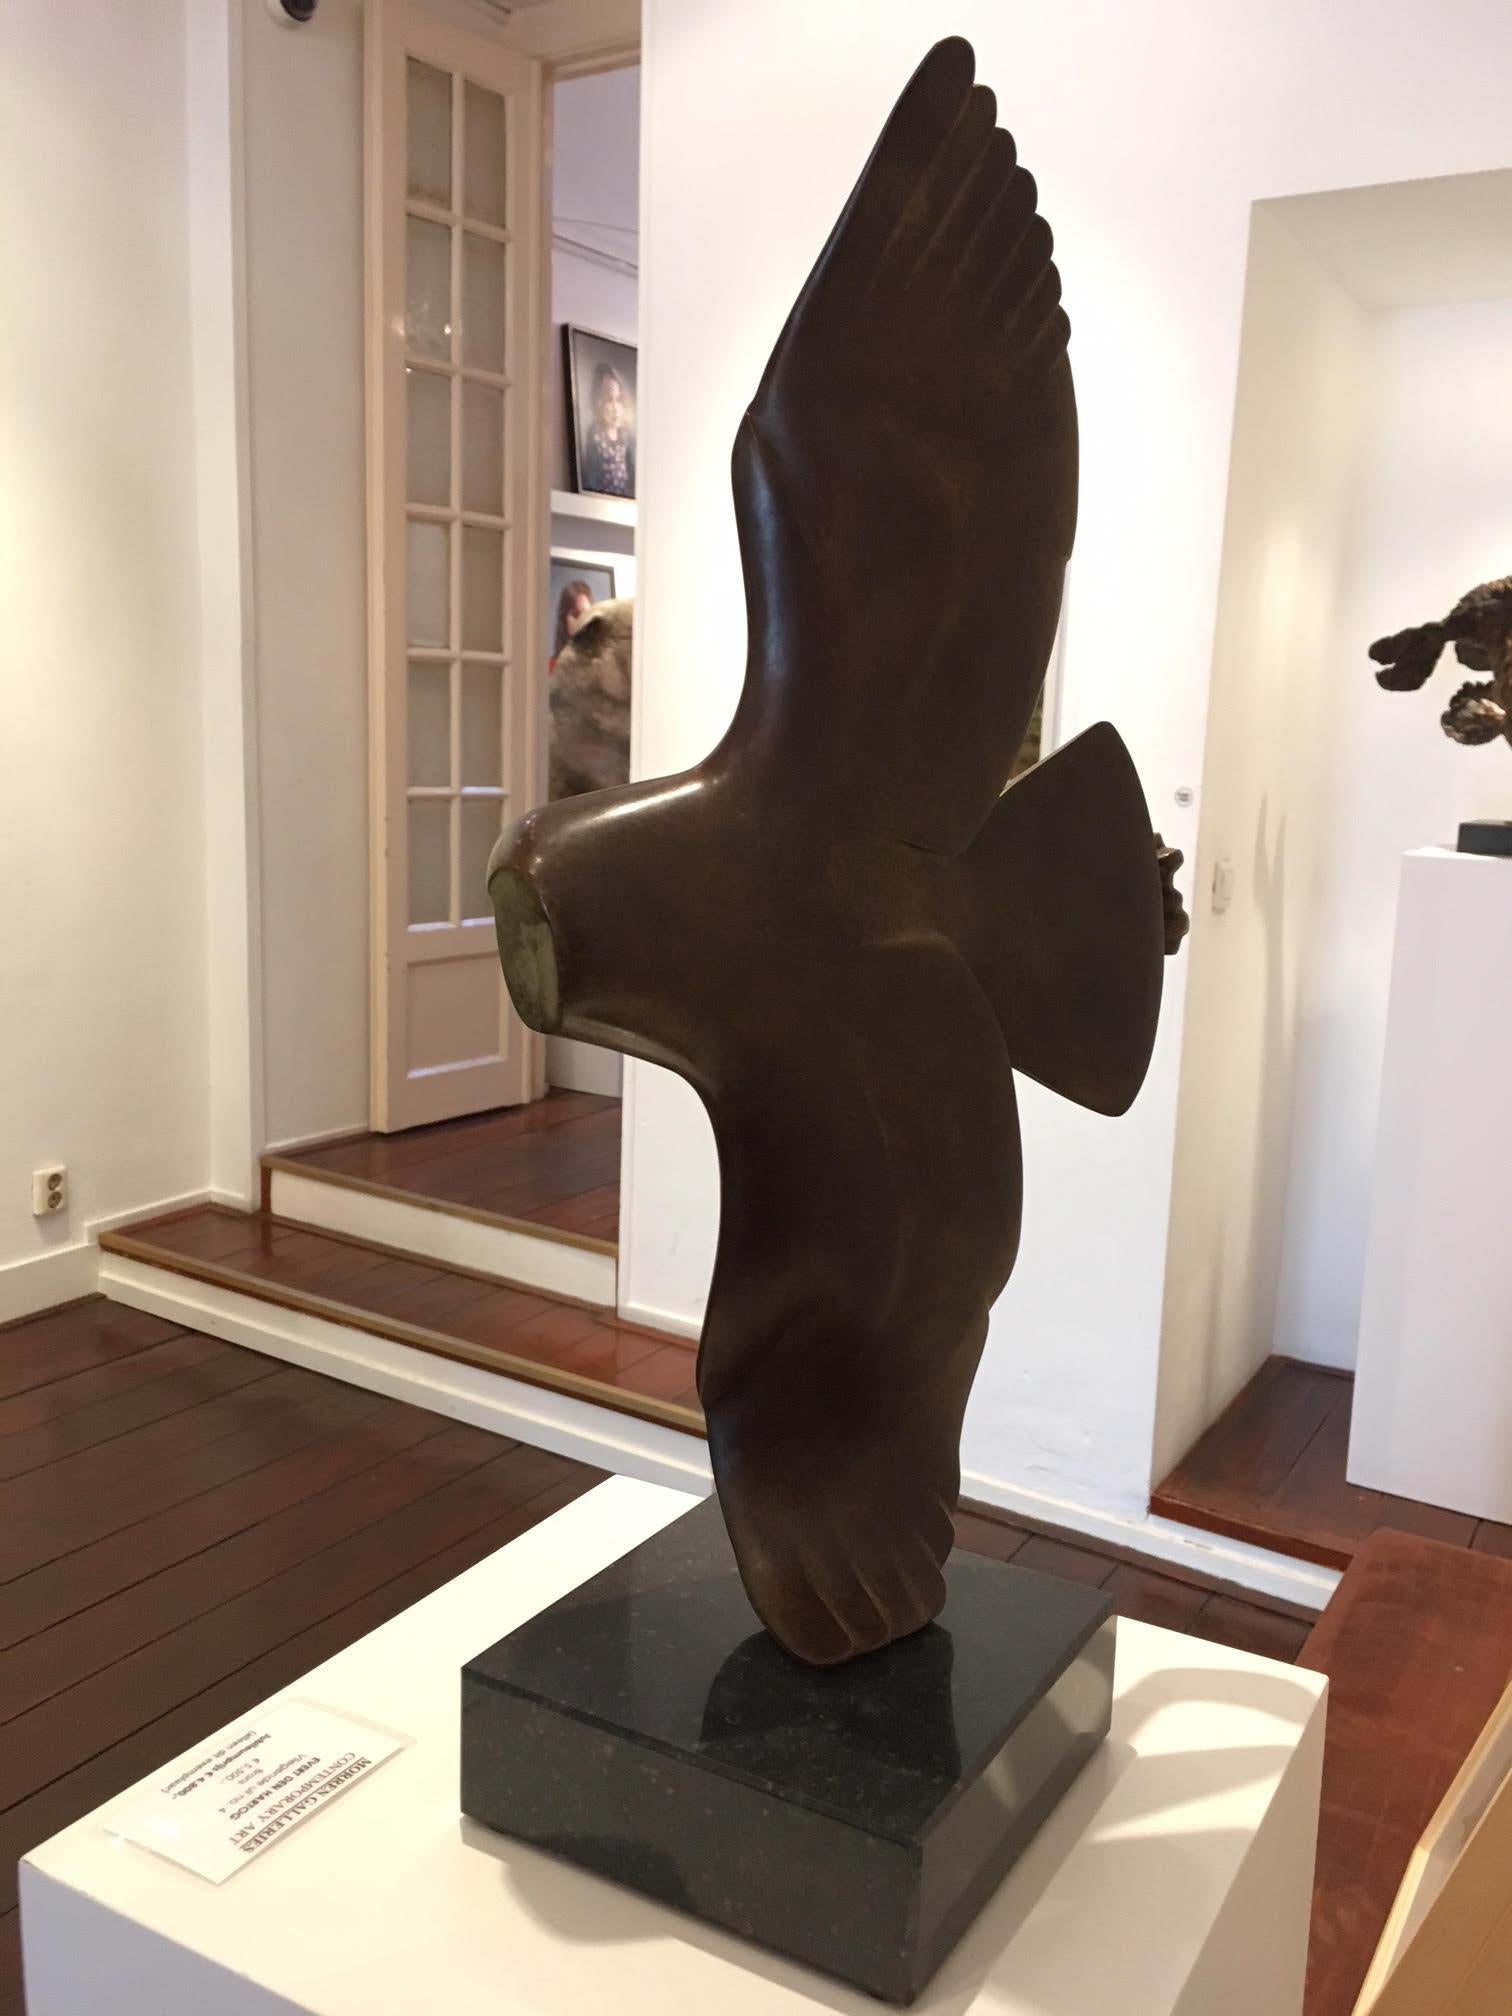 Vliegende Uil Nr. 4 Fliegende Eule, Bronzeskulptur, Tier  – Sculpture von Evert den Hartog